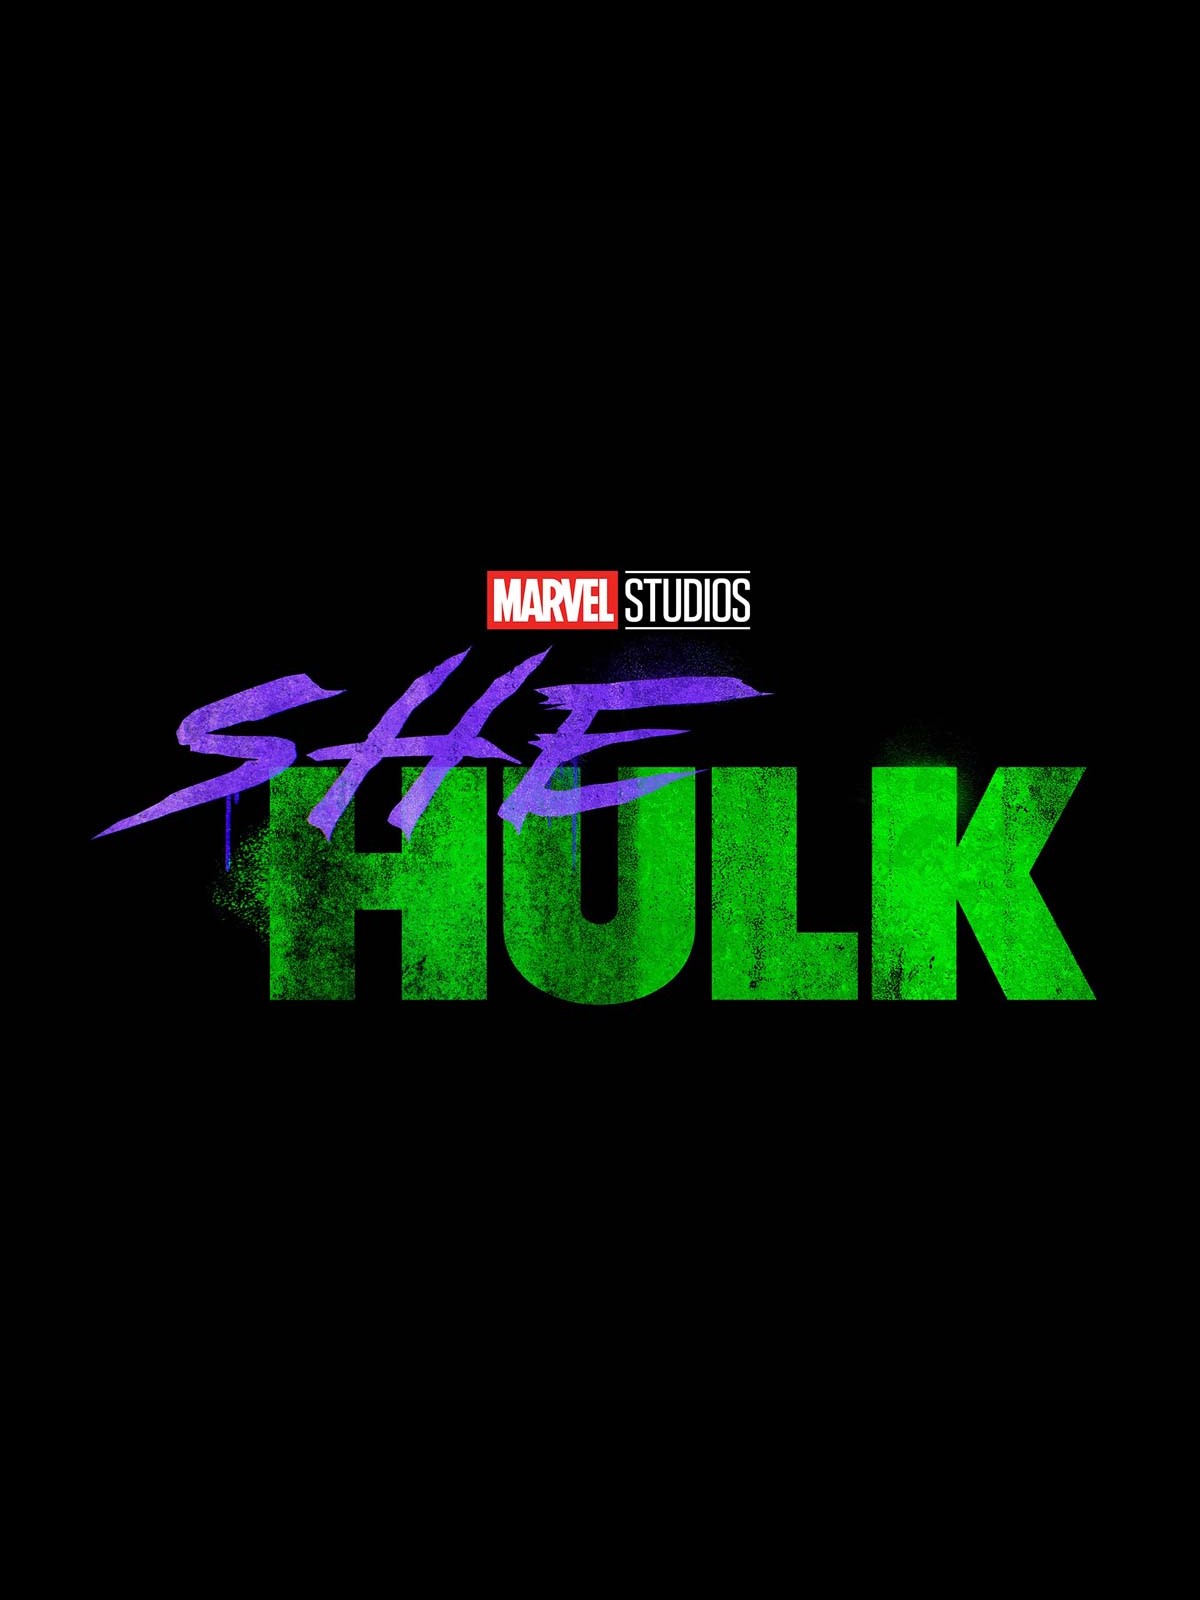 40 - She-Hulk